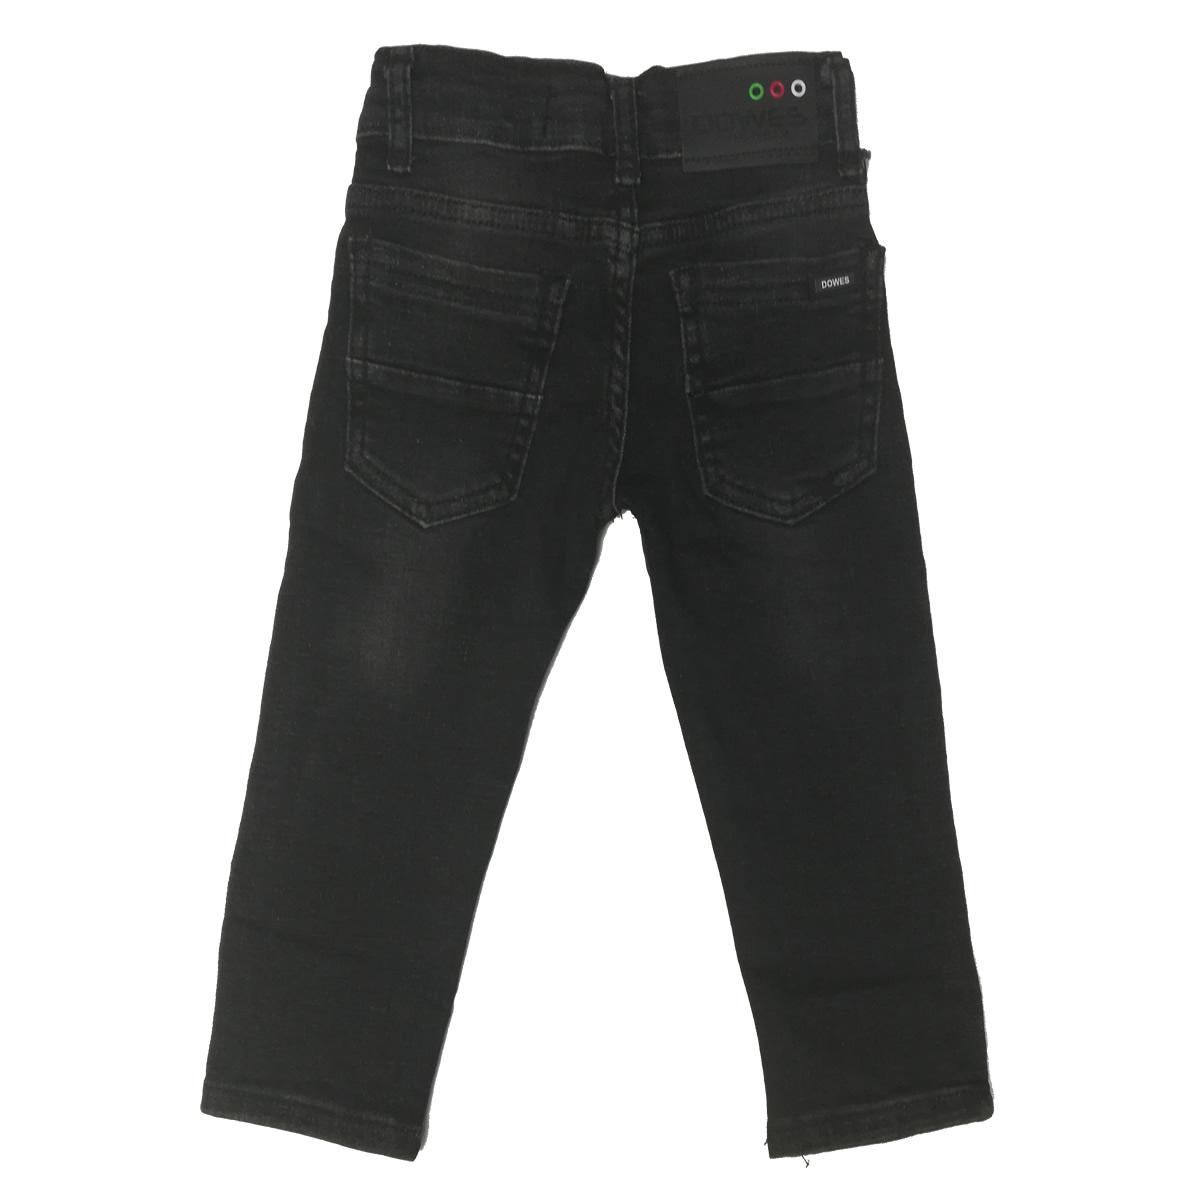 Дитячі джинси, чорні (820-20), Dowes